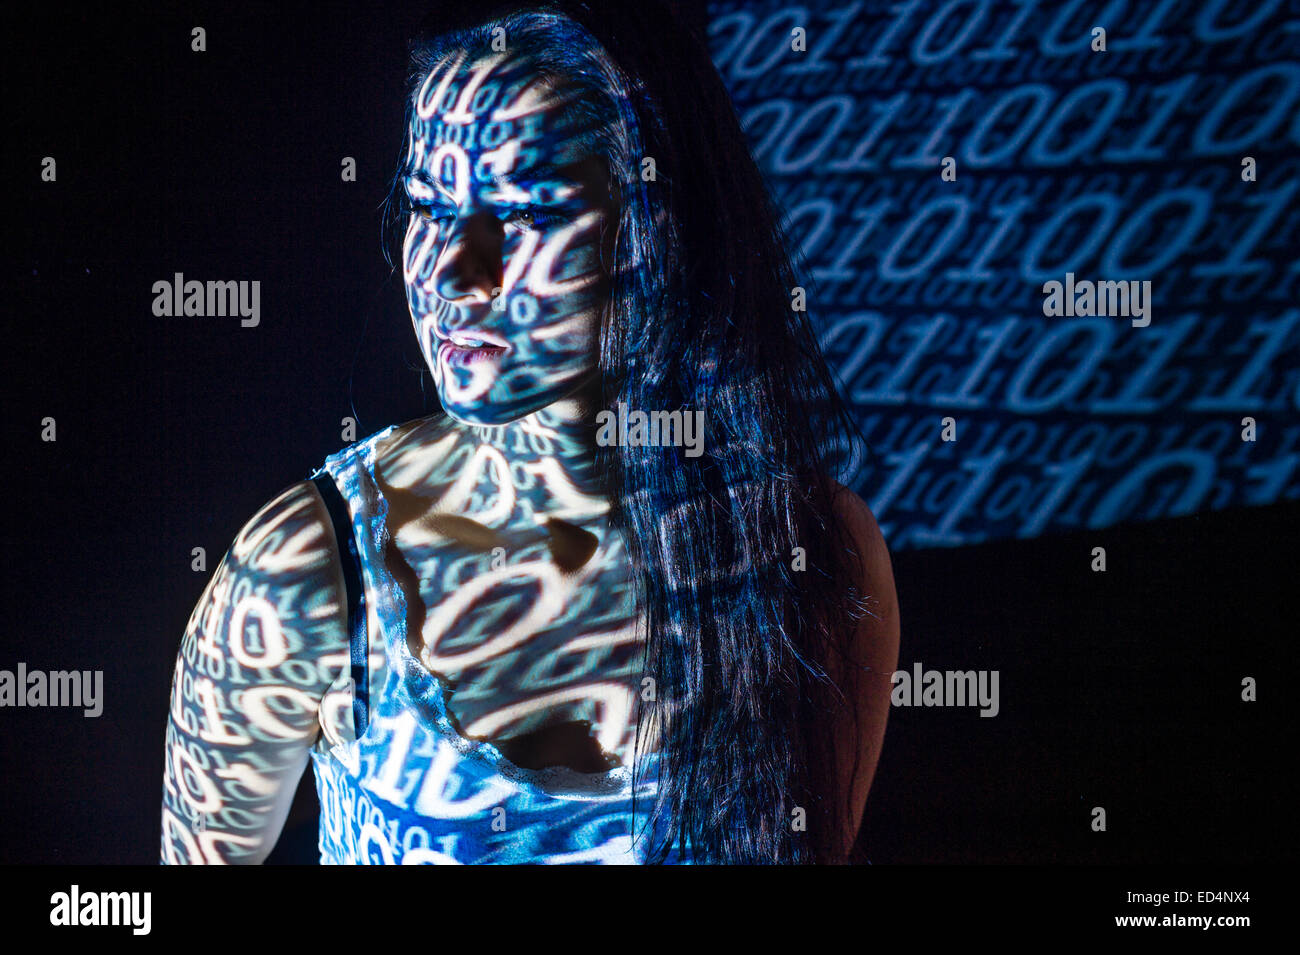 Digitale Kunst: Konzeptbild für Cyber-Terrorismus - eine junge Frau Mädchen verkleidet mit digitalen Bildmuster von binären Computer-Code auf ihr Gesicht projiziert. Stockfoto